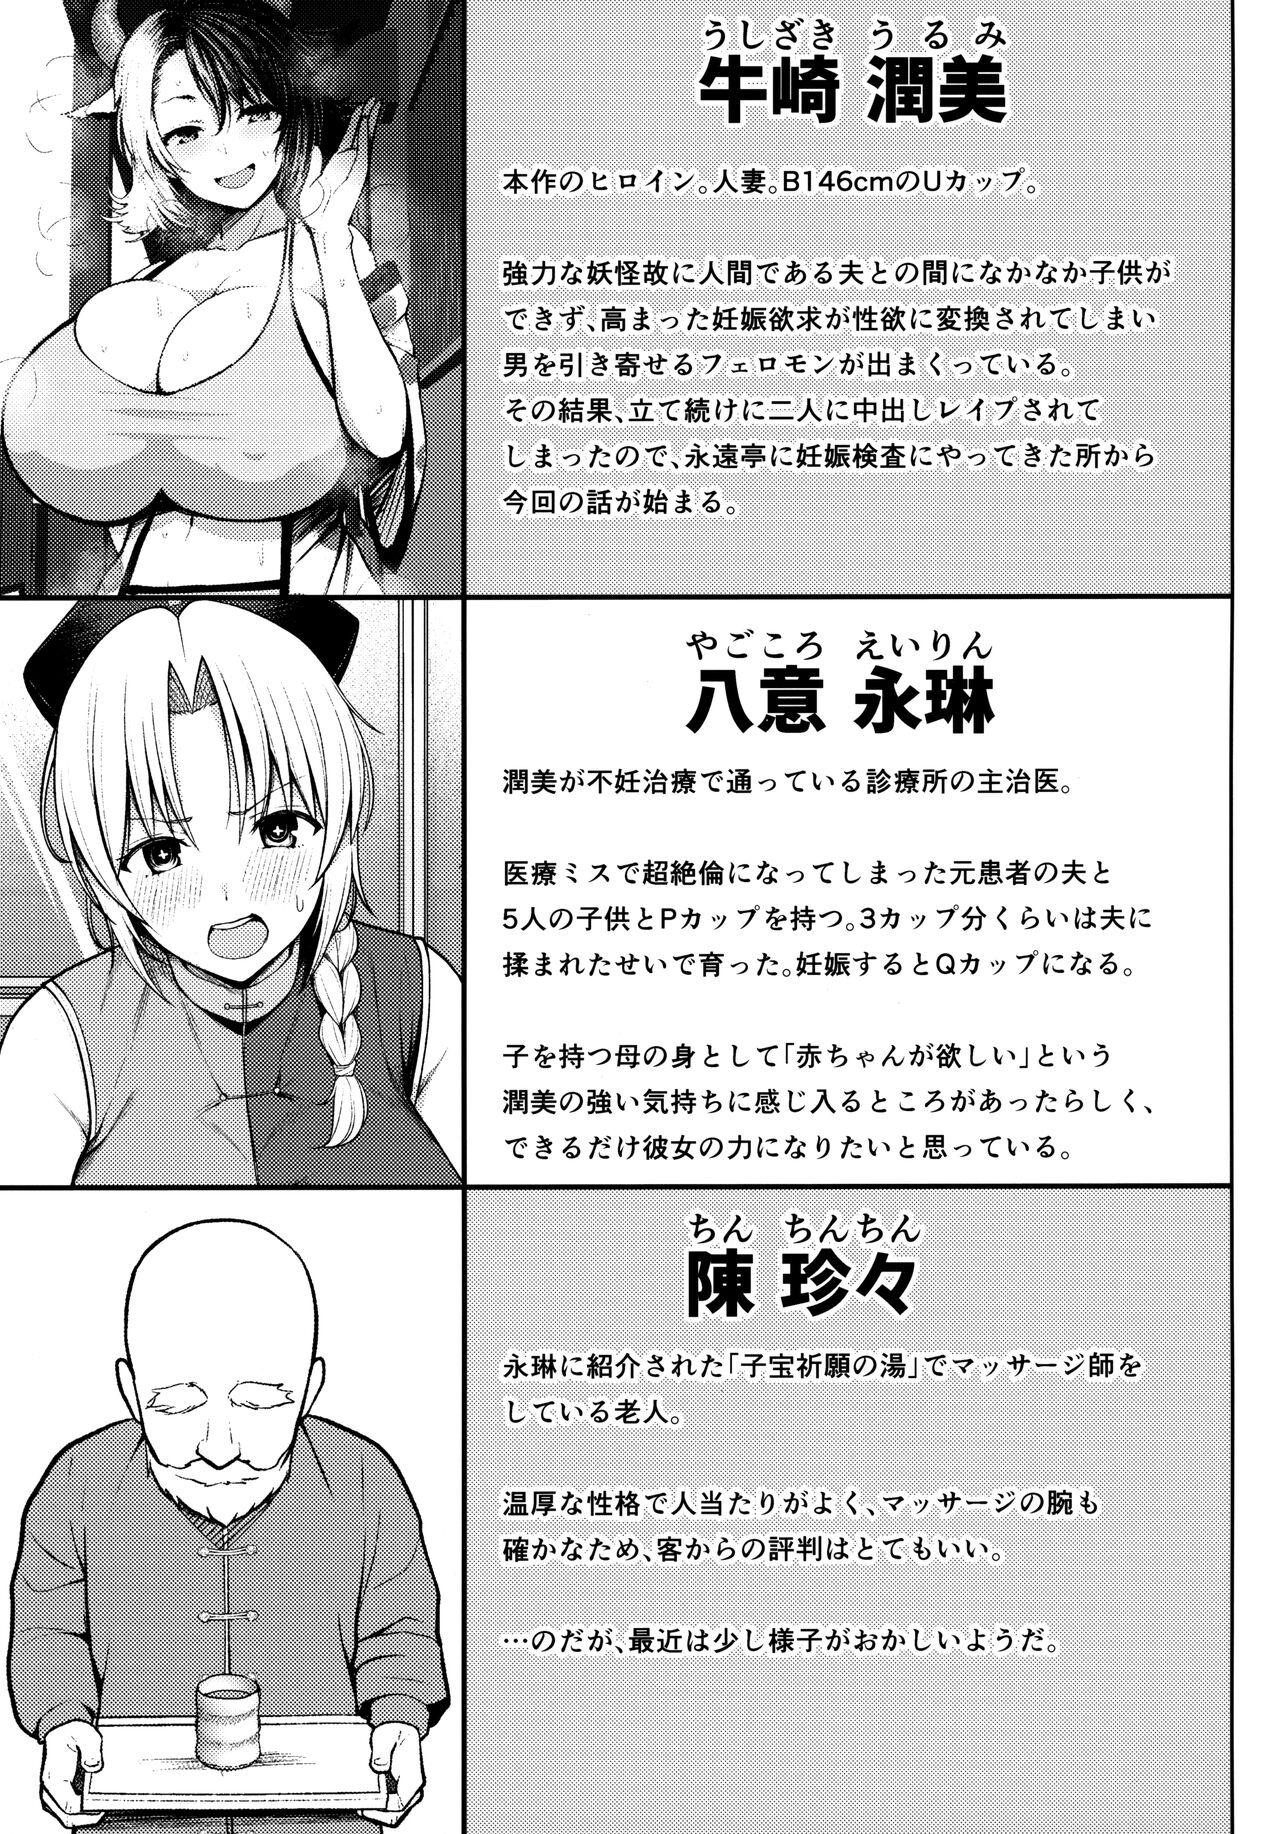 3some Oku-san no Oppai ga Dekasugiru no ga Warui! 4 - Touhou project Amatuer - Page 2